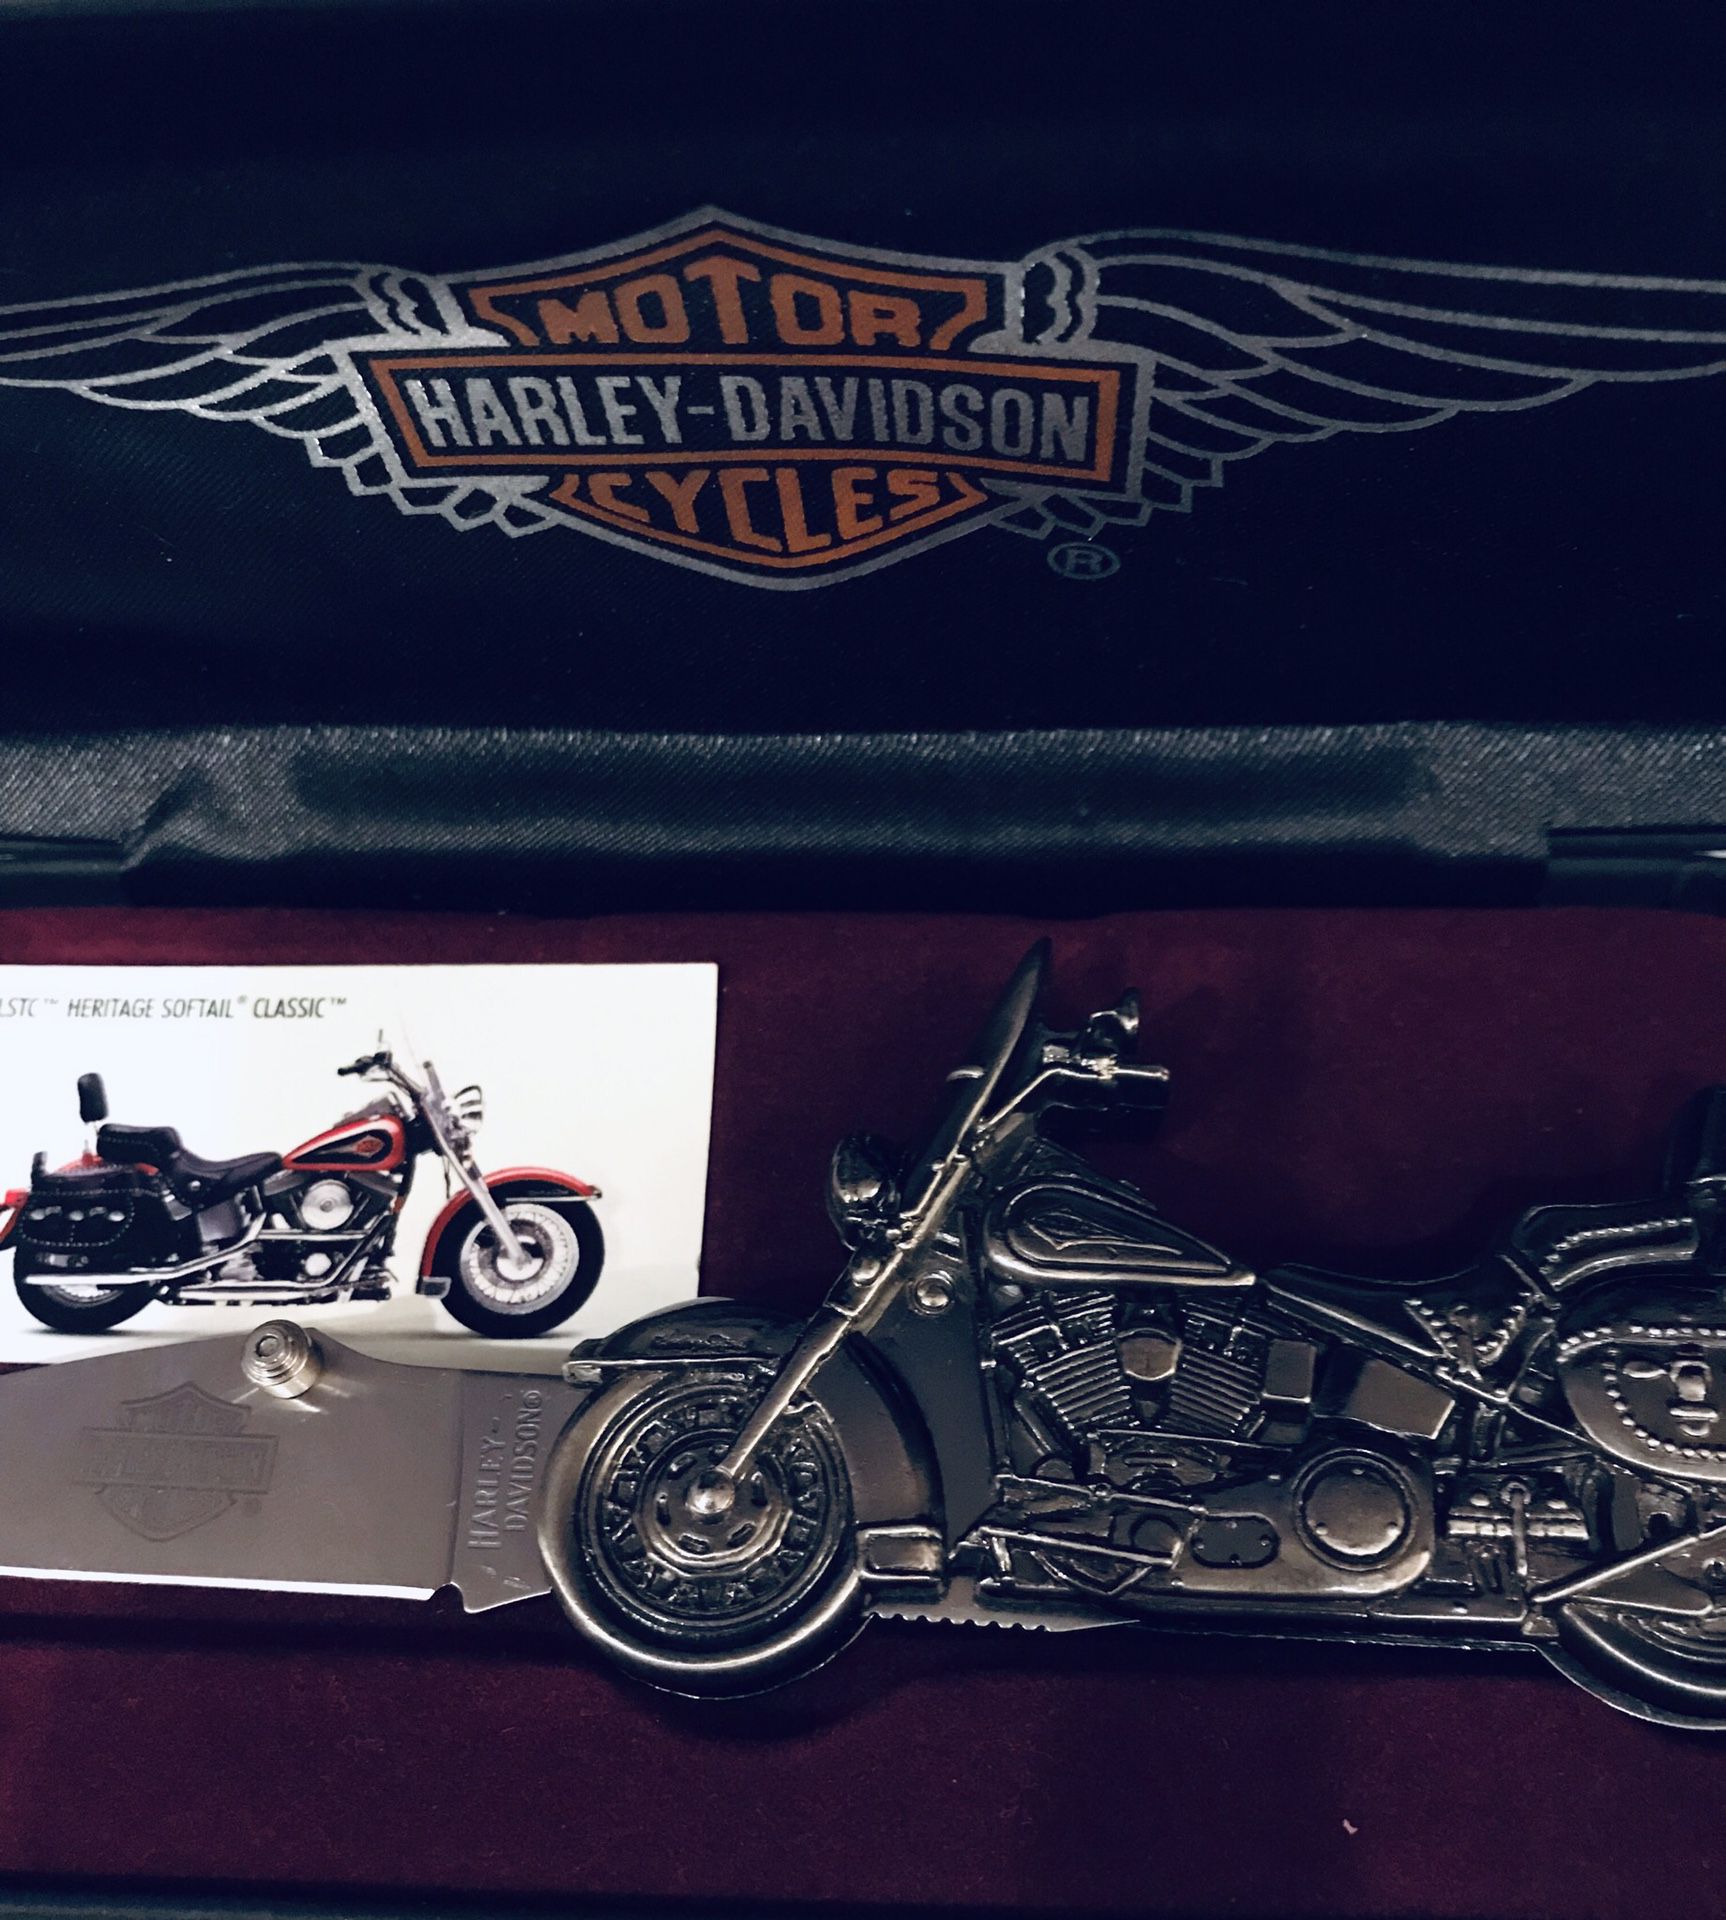 Harley Davidson Classic Heritage vintage pocket kni